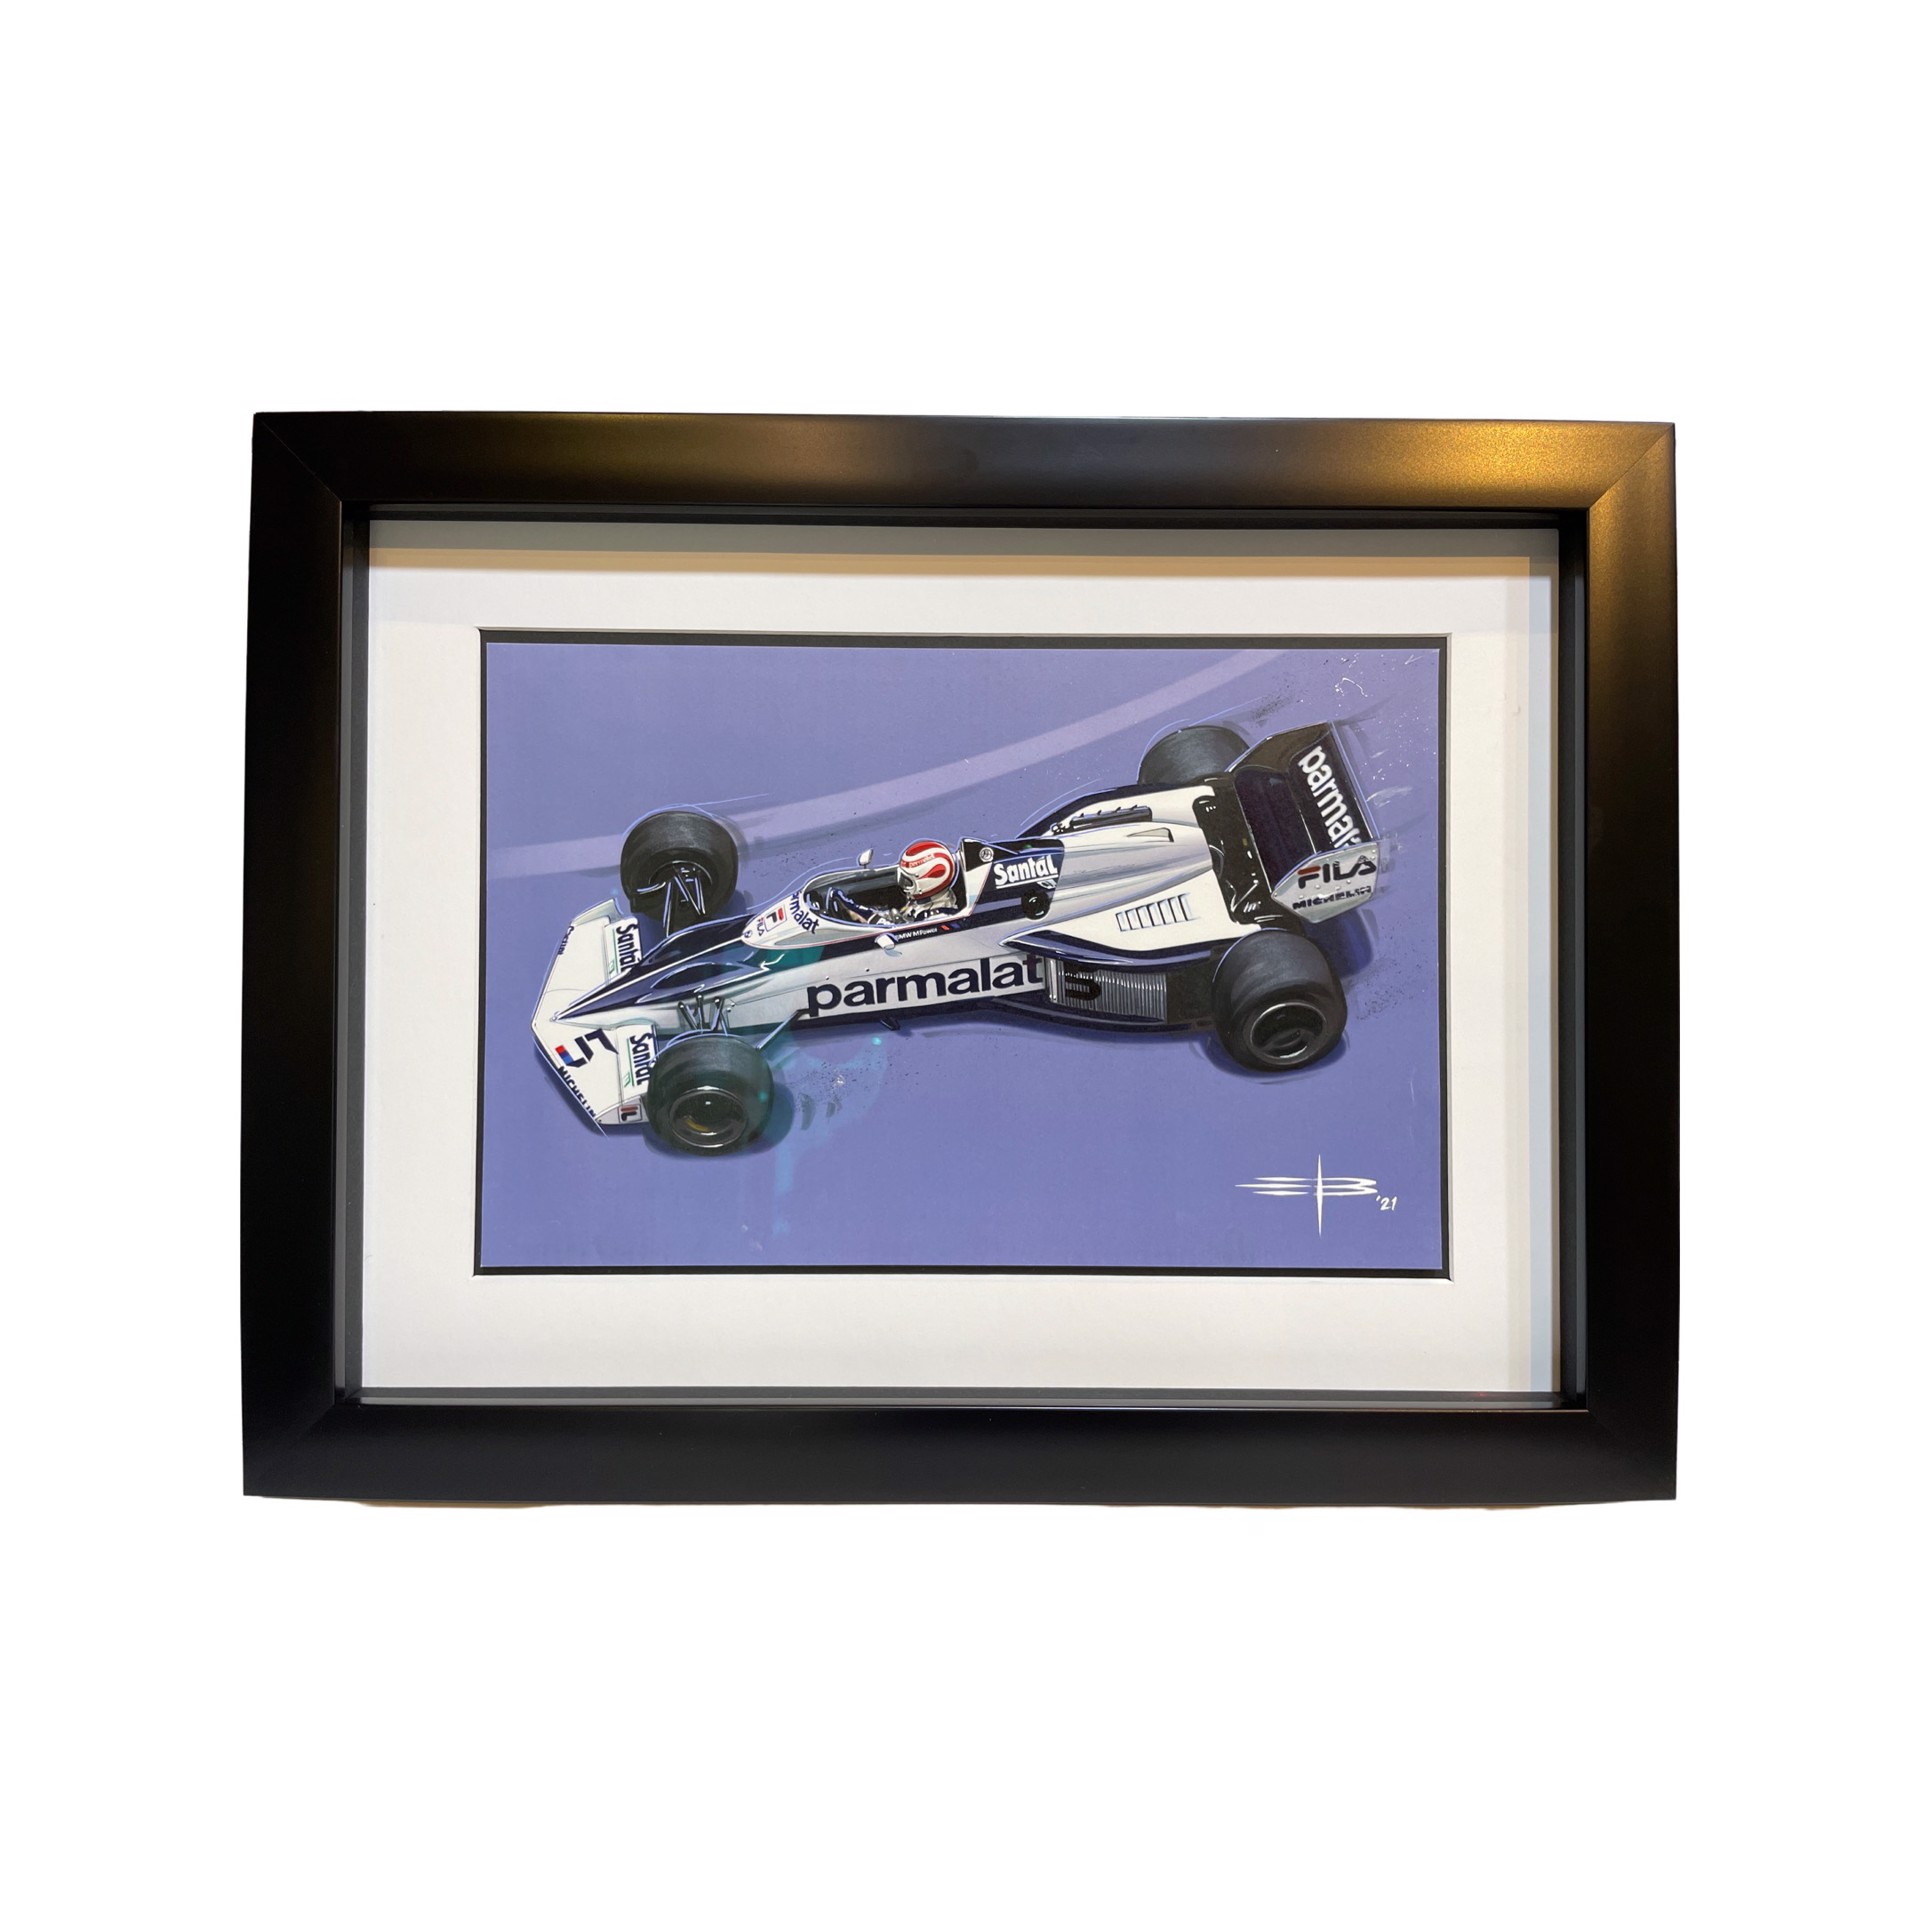 “Formula 1 Brabham” by Emile Bouret